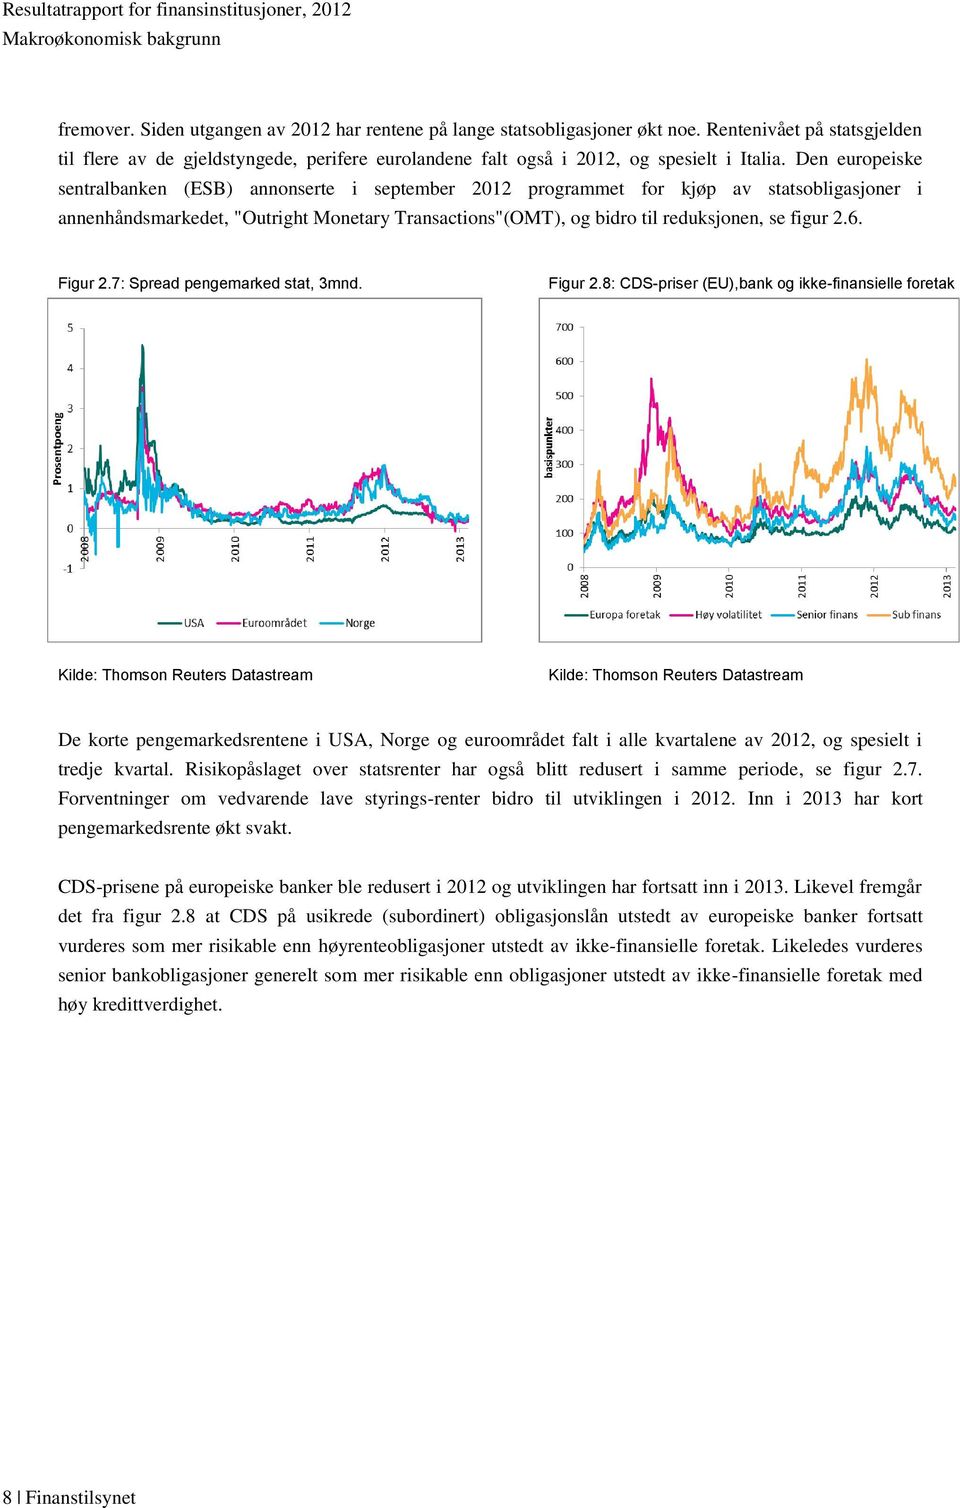 Den europeiske sentralbanken (ESB) annonserte i september 2012 programmet for kjøp av statsobligasjoner i annenhåndsmarkedet, "Outright Monetary Transactions"(OMT), og bidro til reduksjonen, se figur